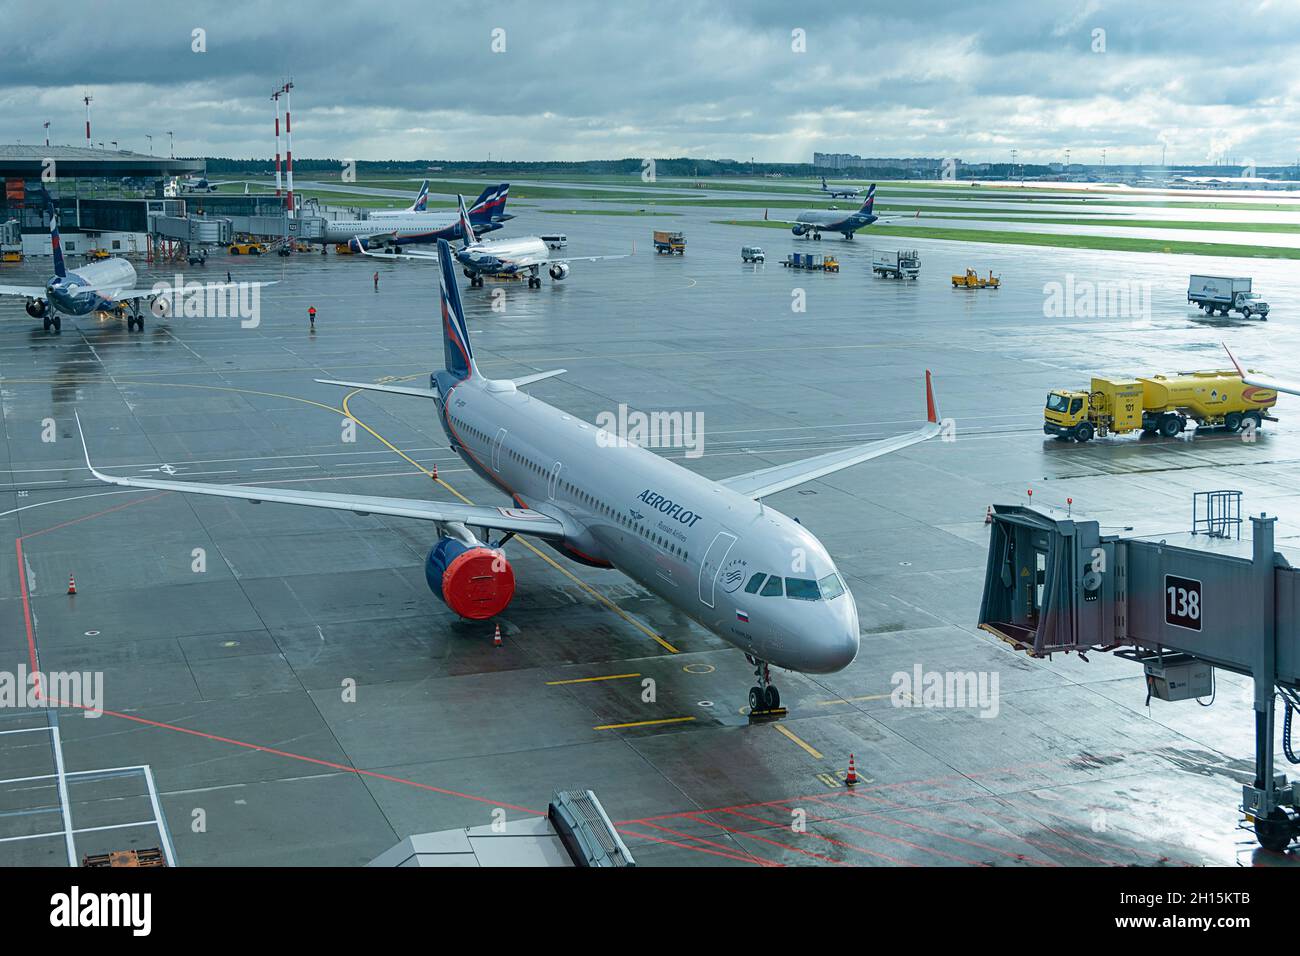 MOSKAU - 04. SEPTEMBER 2021: Aeroflot-Flugzeug am internationalen Flughafen Sheremetyevo an regnerischen bewölkten Tagen Stockfoto